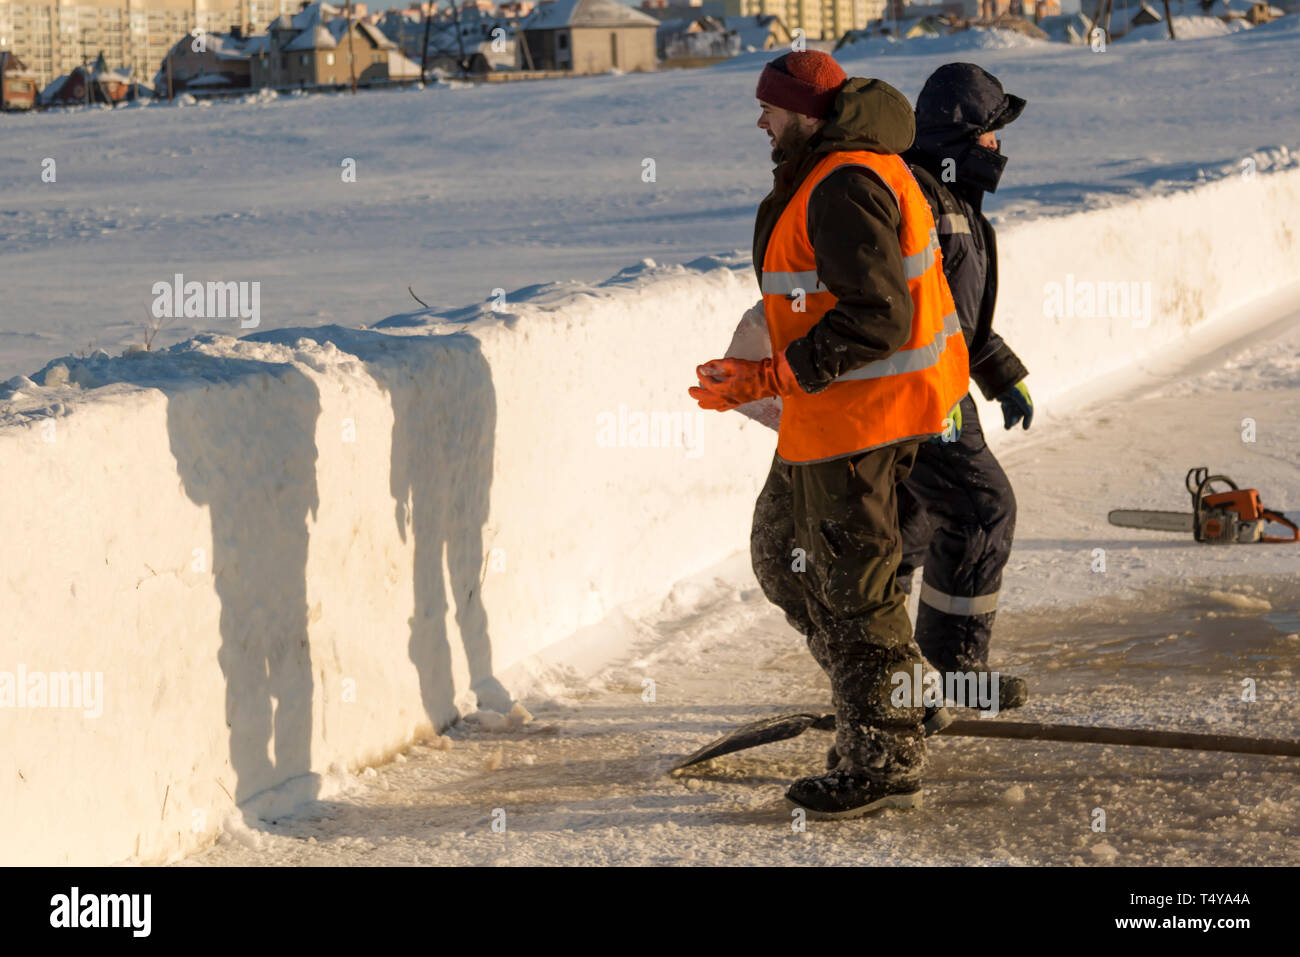 Un trabajador en un chaleco reflectante naranja lleva un bloque de hielo desde el orificio en su mano. Foto de stock